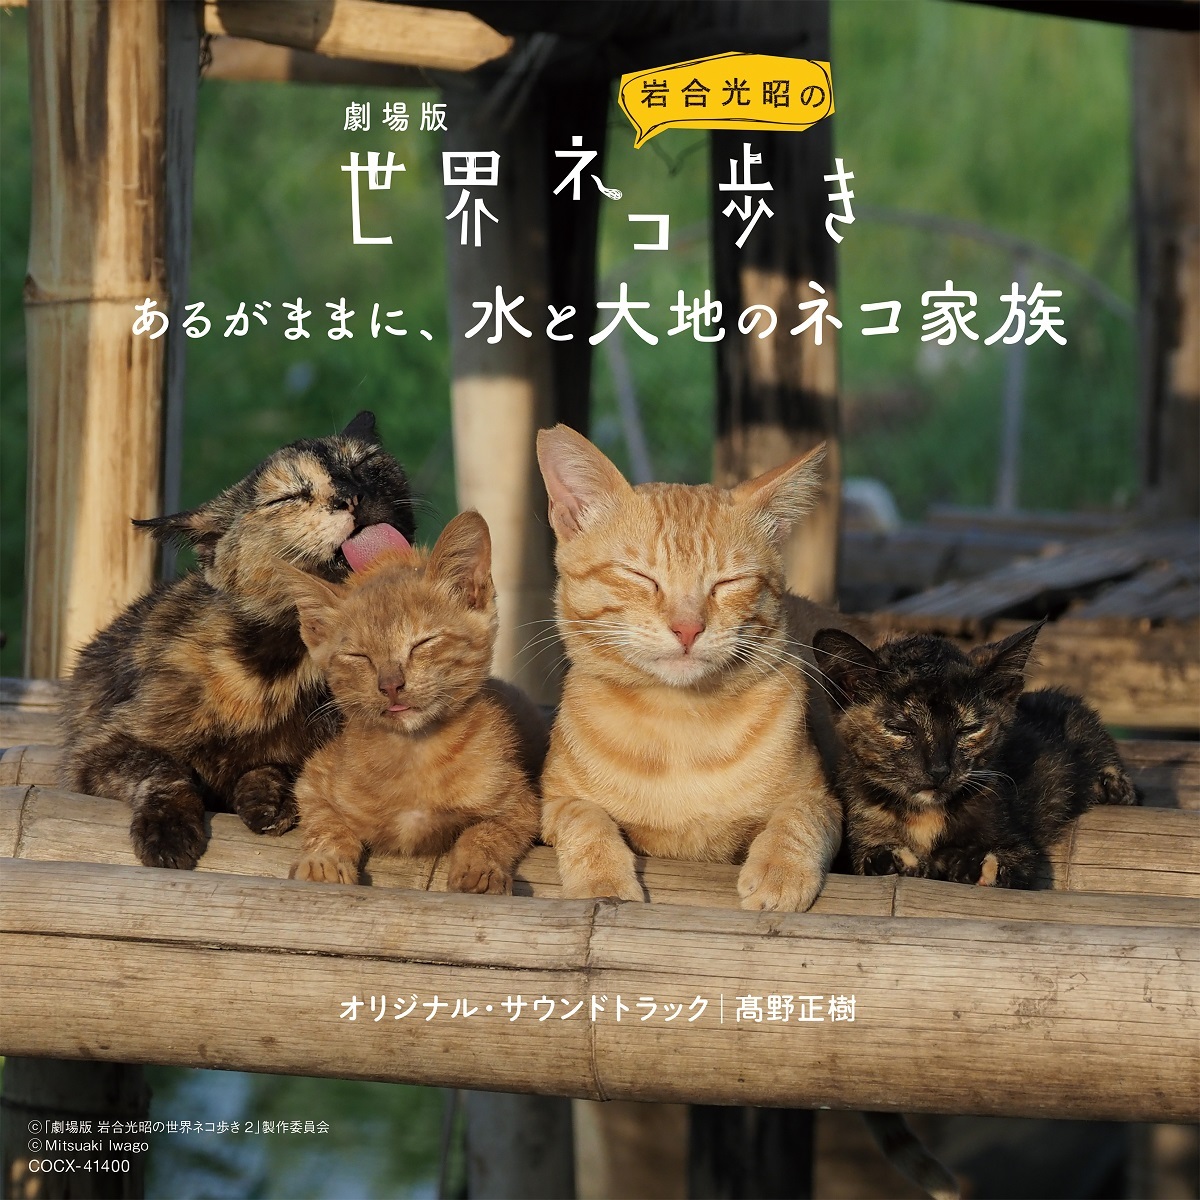 劇場版『岩合光昭の世界ネコ歩き あるがままに、水と大地のネコ家族』オリジナル・サウンドトラック